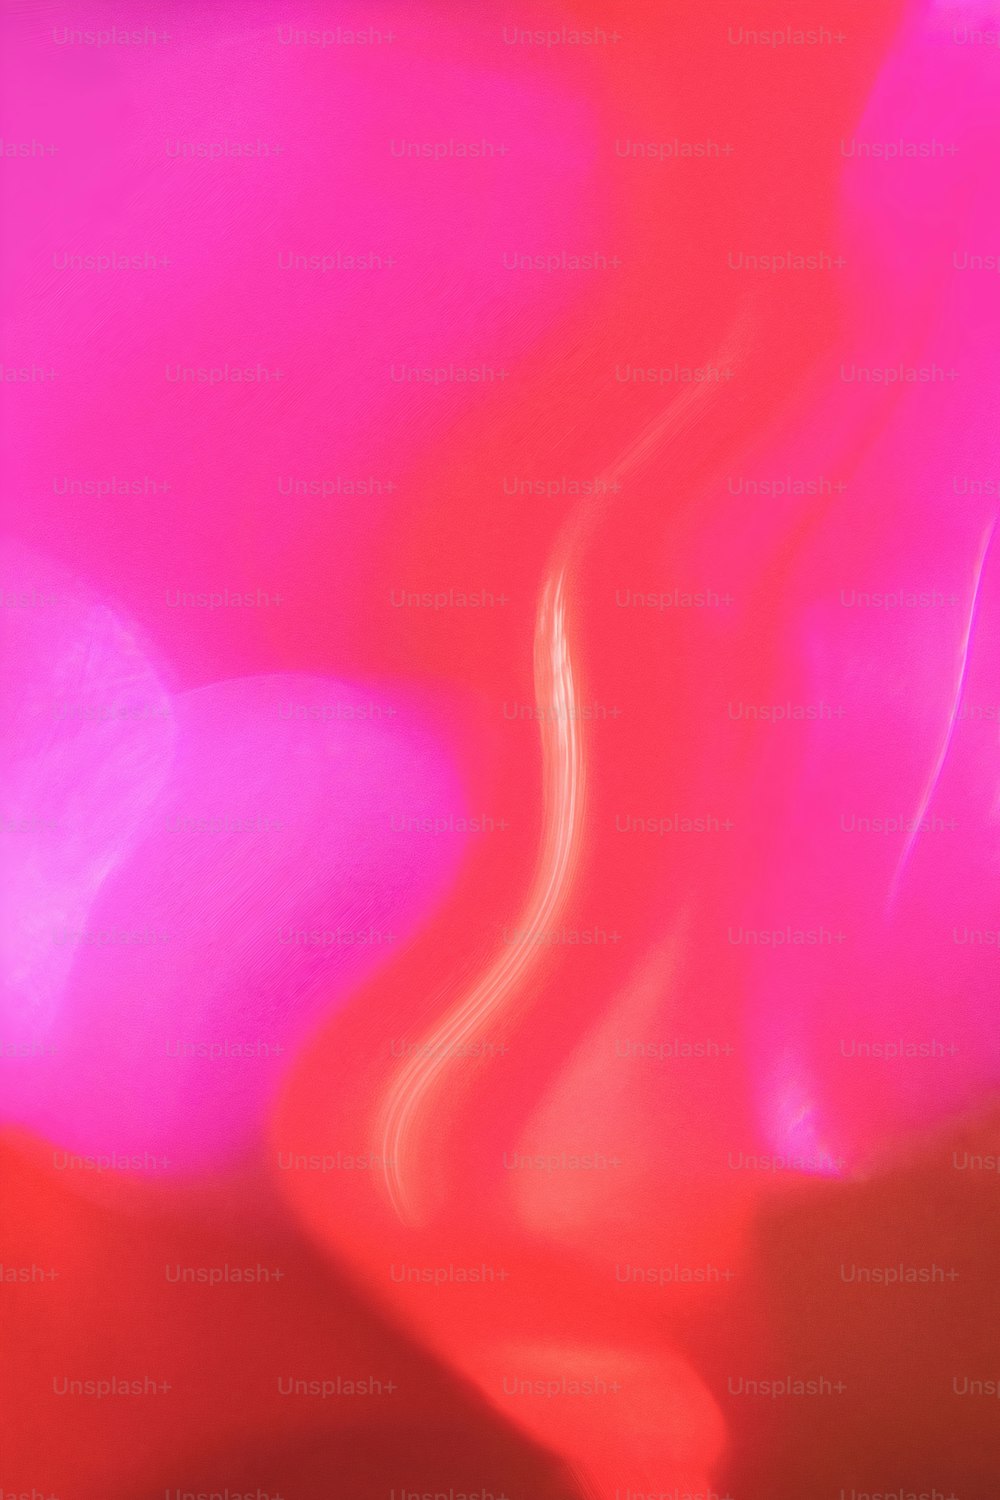 ein verschwommenes Bild mit rotem und rosafarbenem Hintergrund